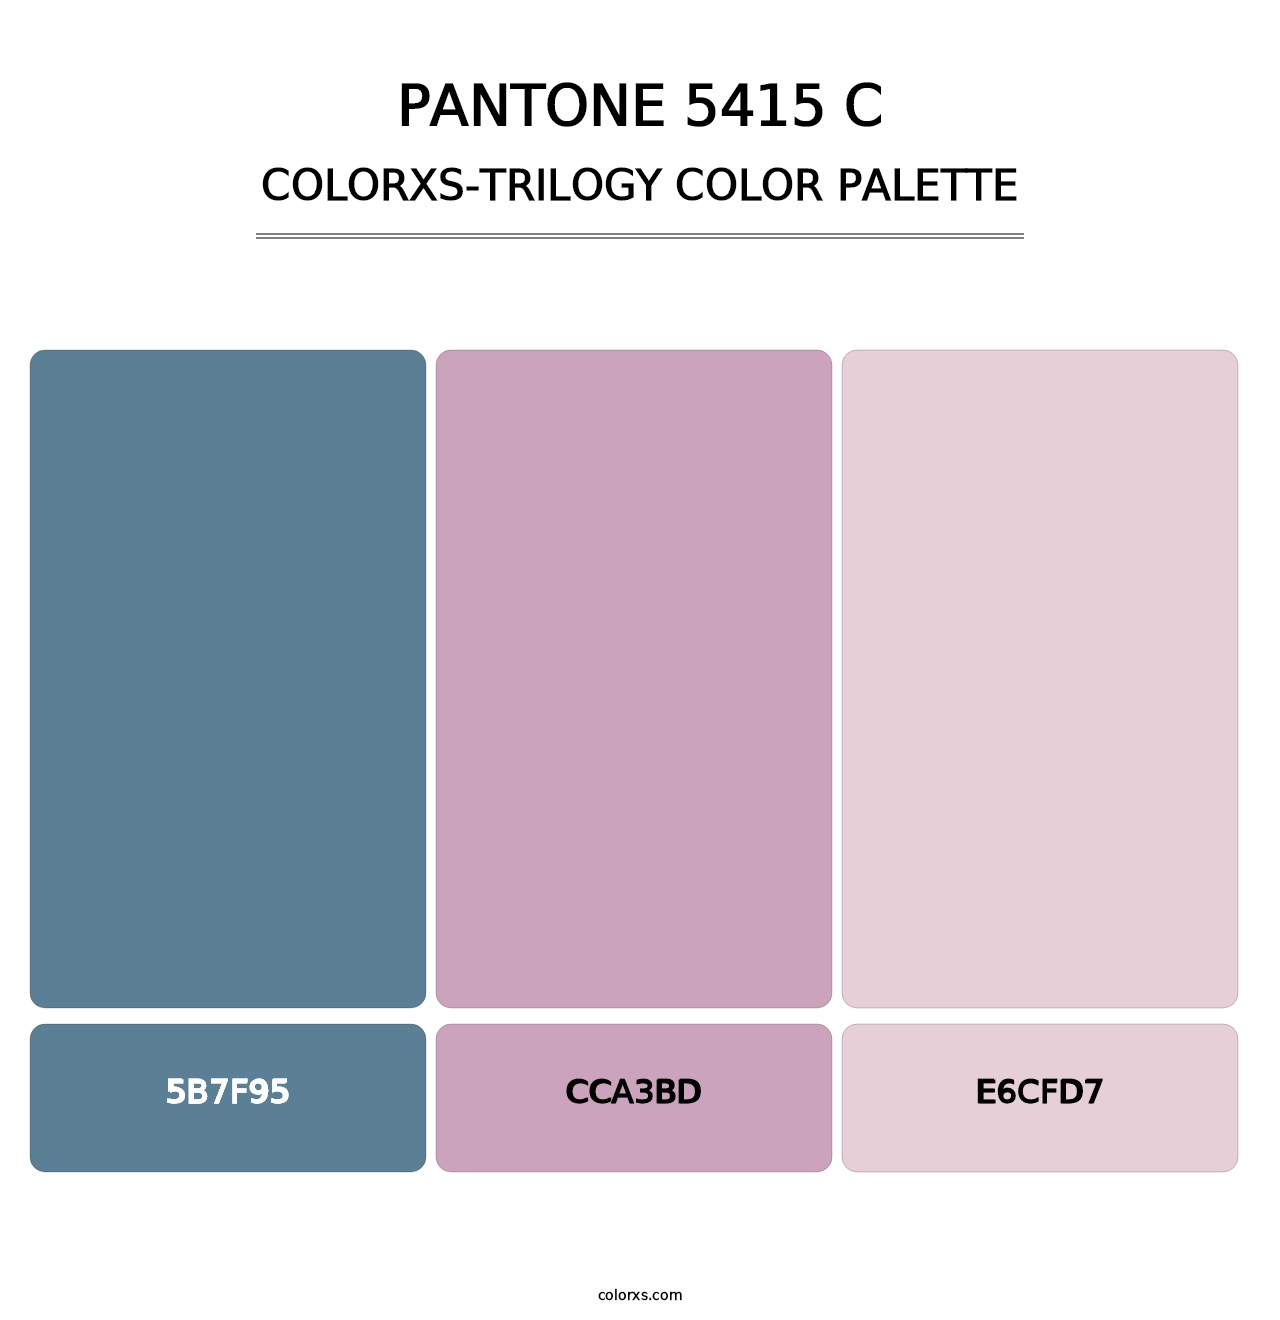 PANTONE 5415 C - Colorxs Trilogy Palette